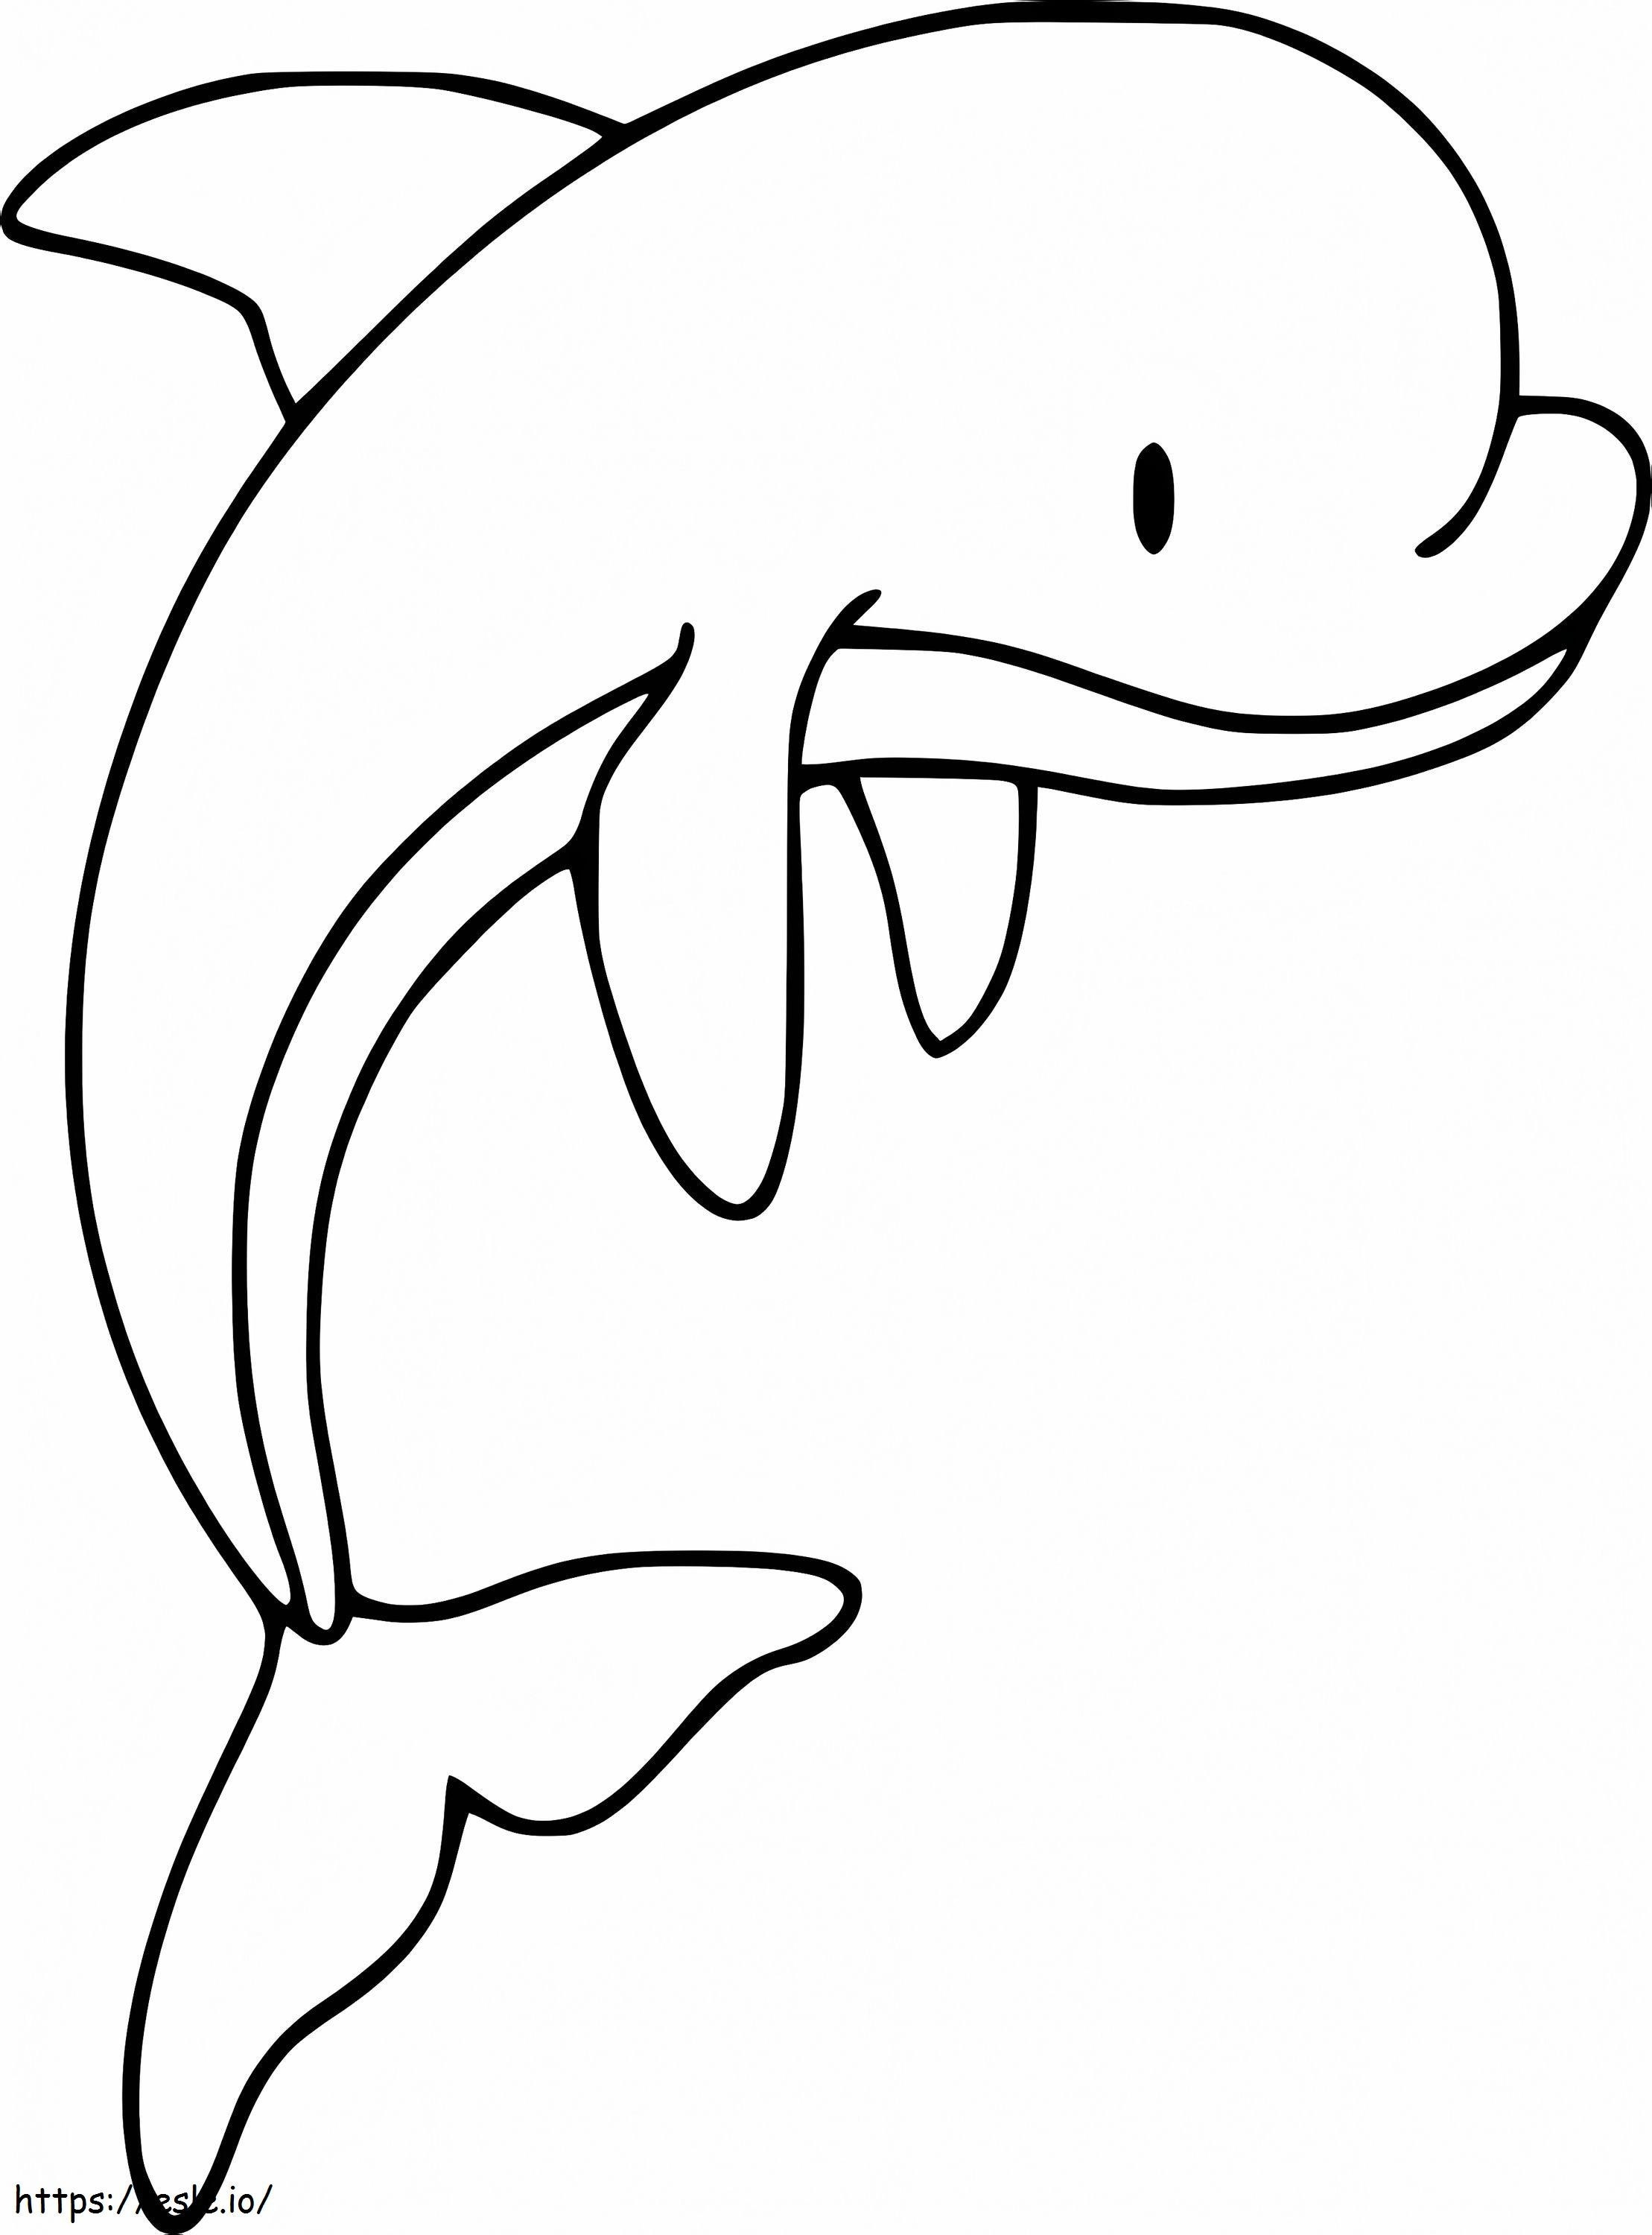 Un delfín sonríe para colorear